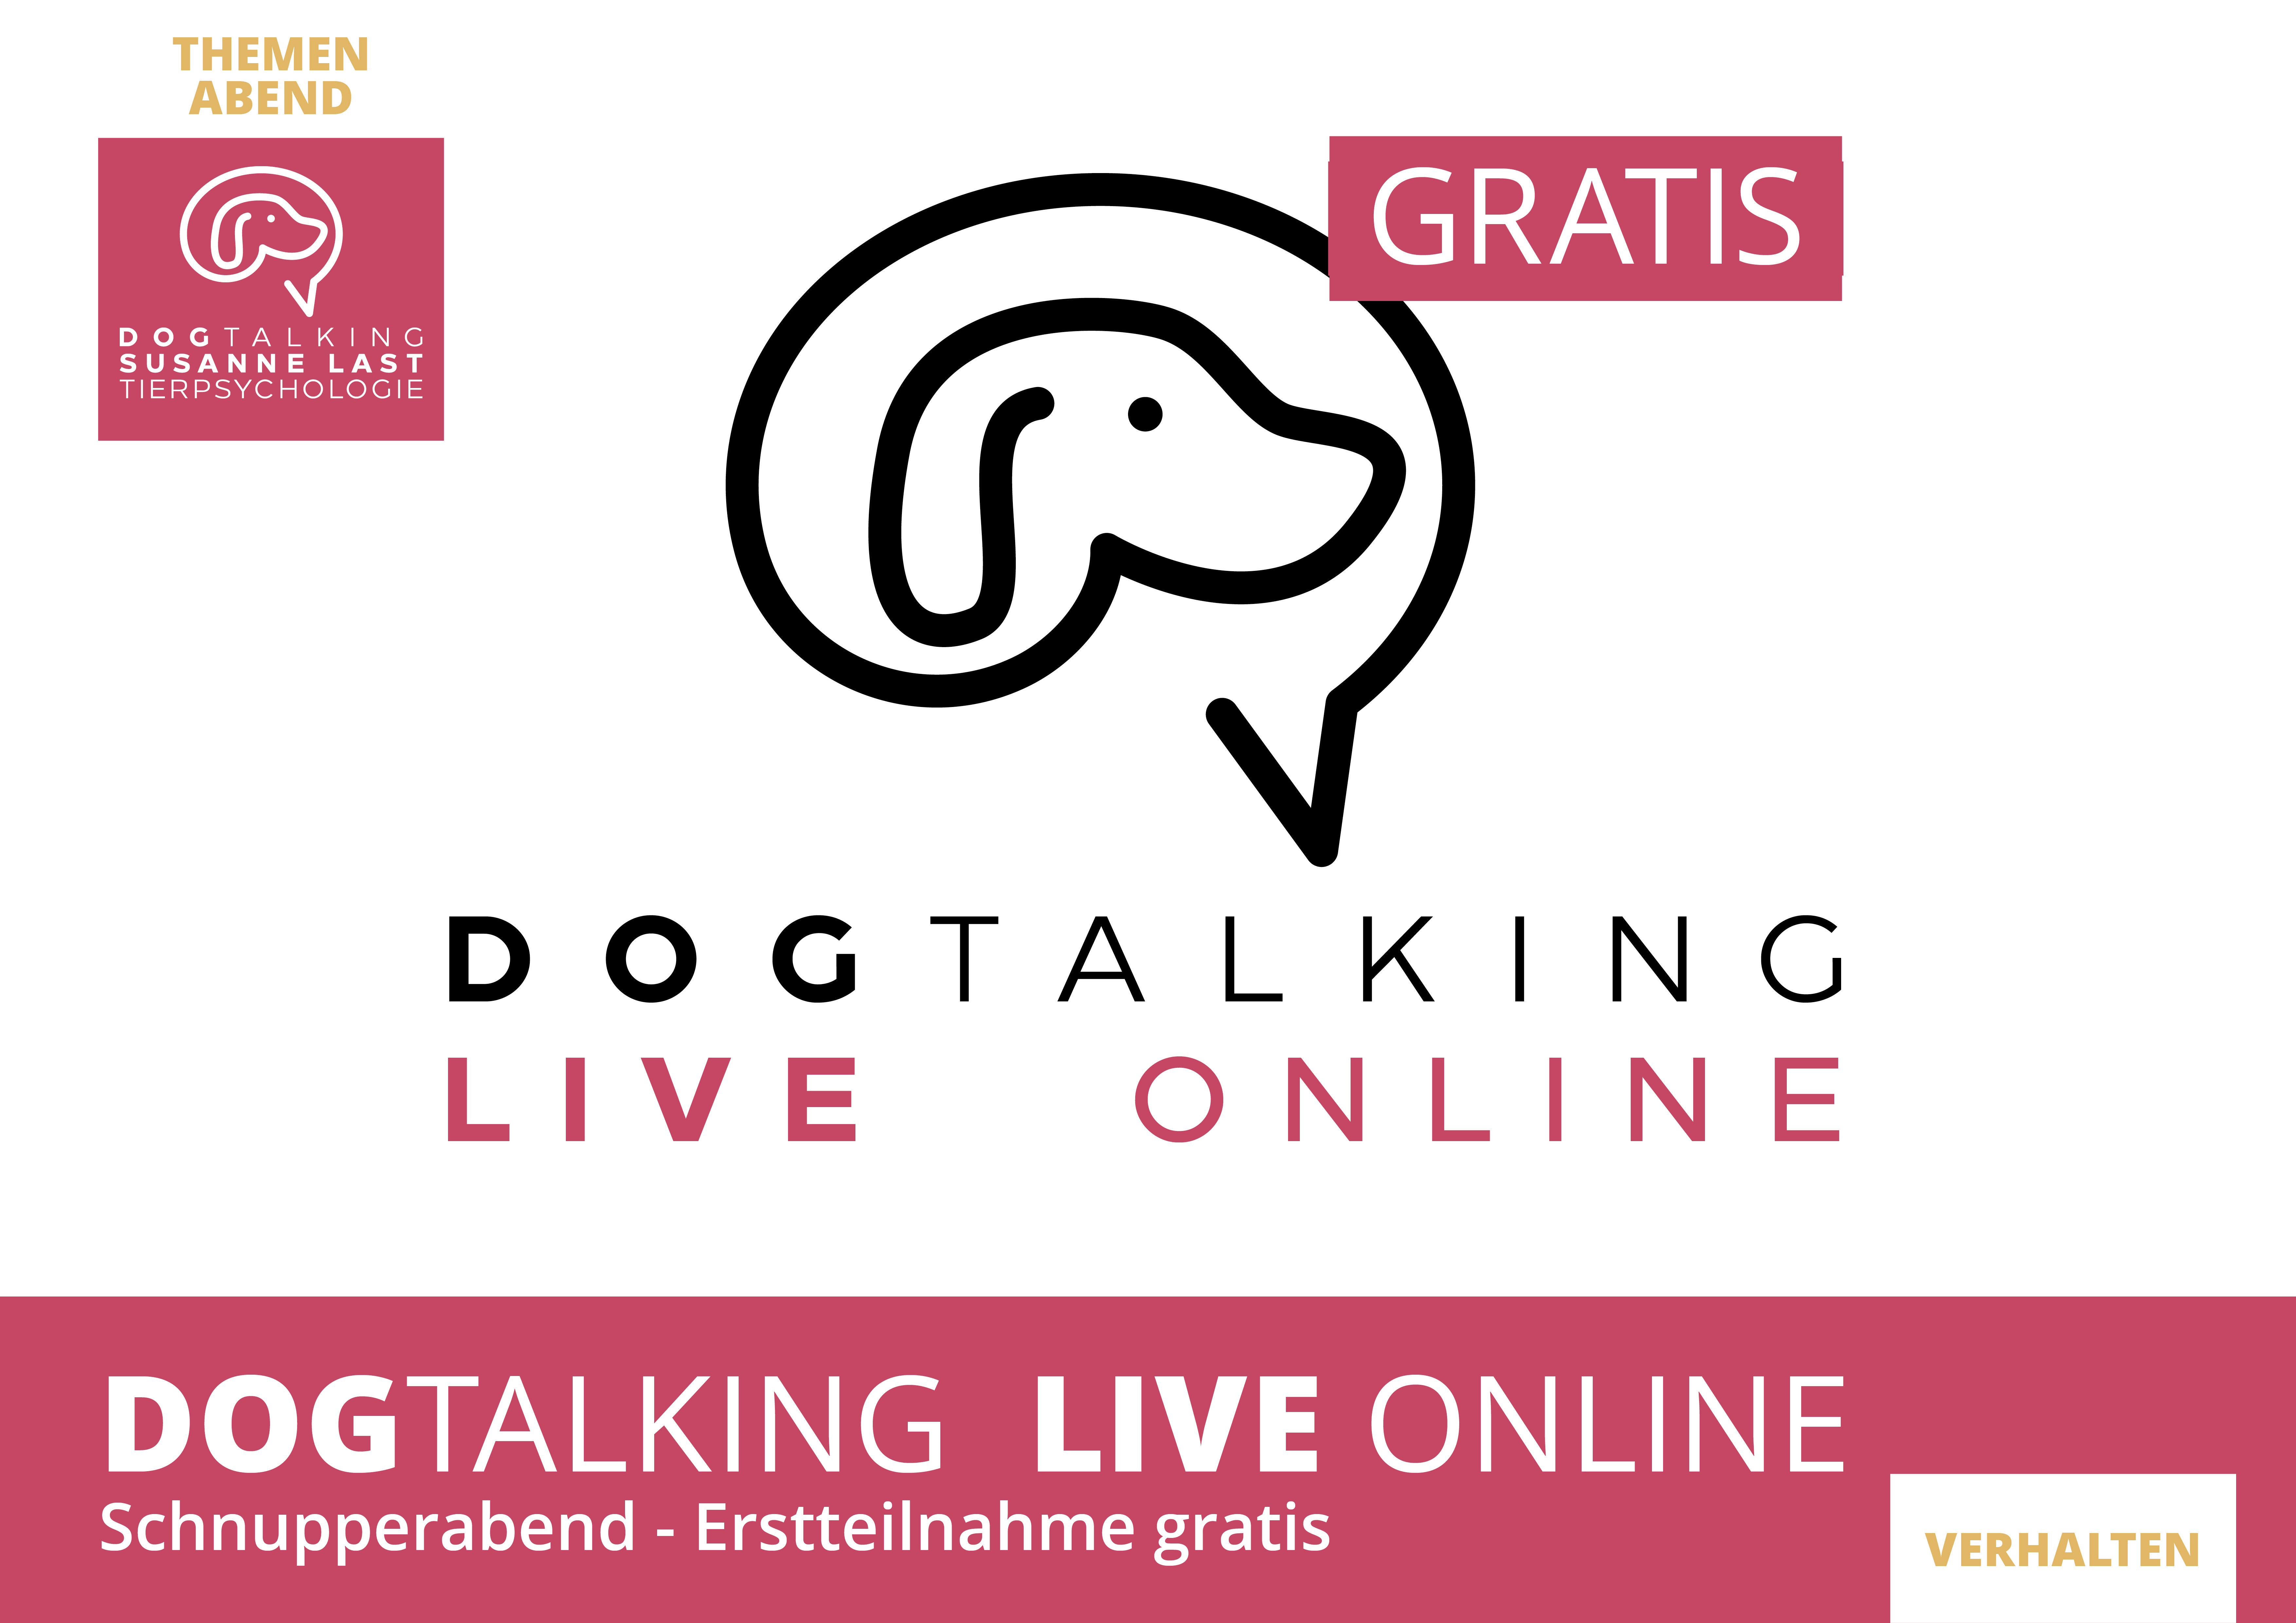 DOGTALKING live online Schnupperabend- Erstteilnahme gratis